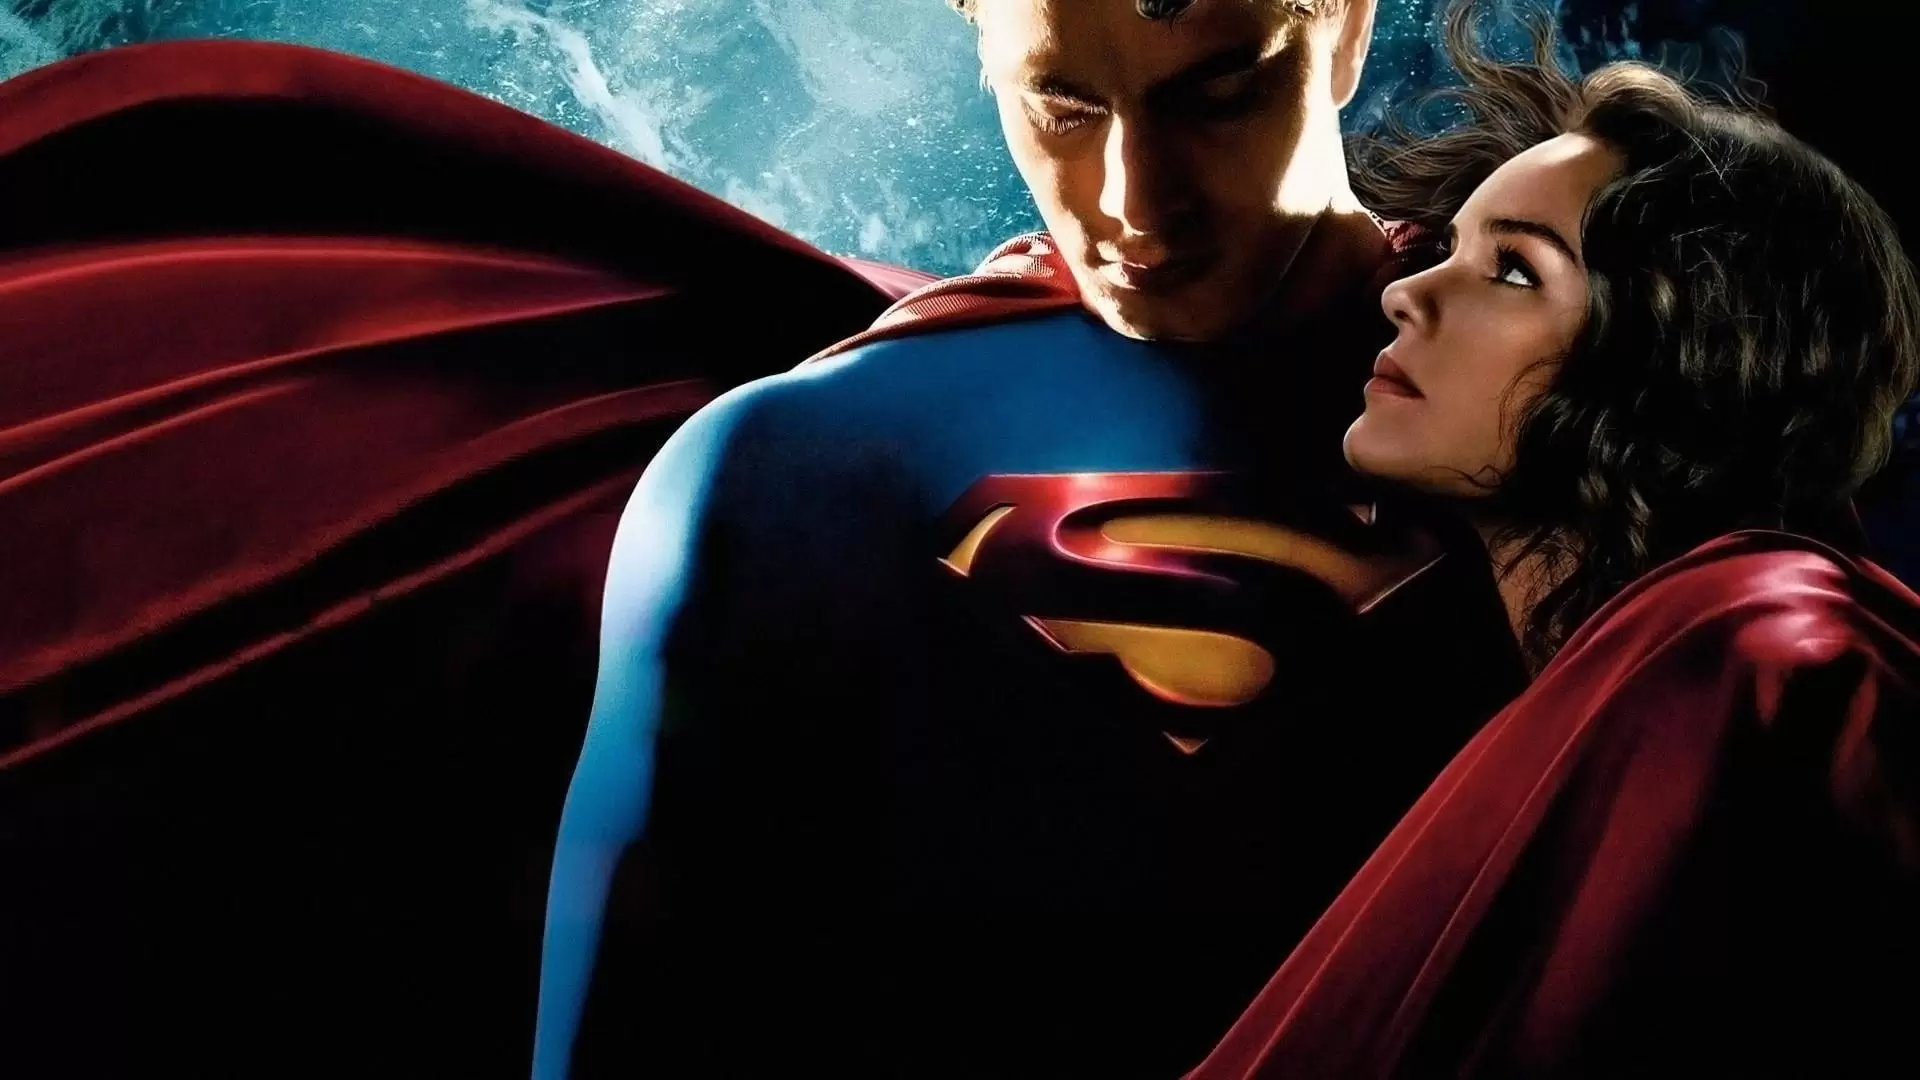 دانلود فیلم Superman Returns 2006 (بازگشت سوپرمن) با زیرنویس فارسی و تماشای آنلاین